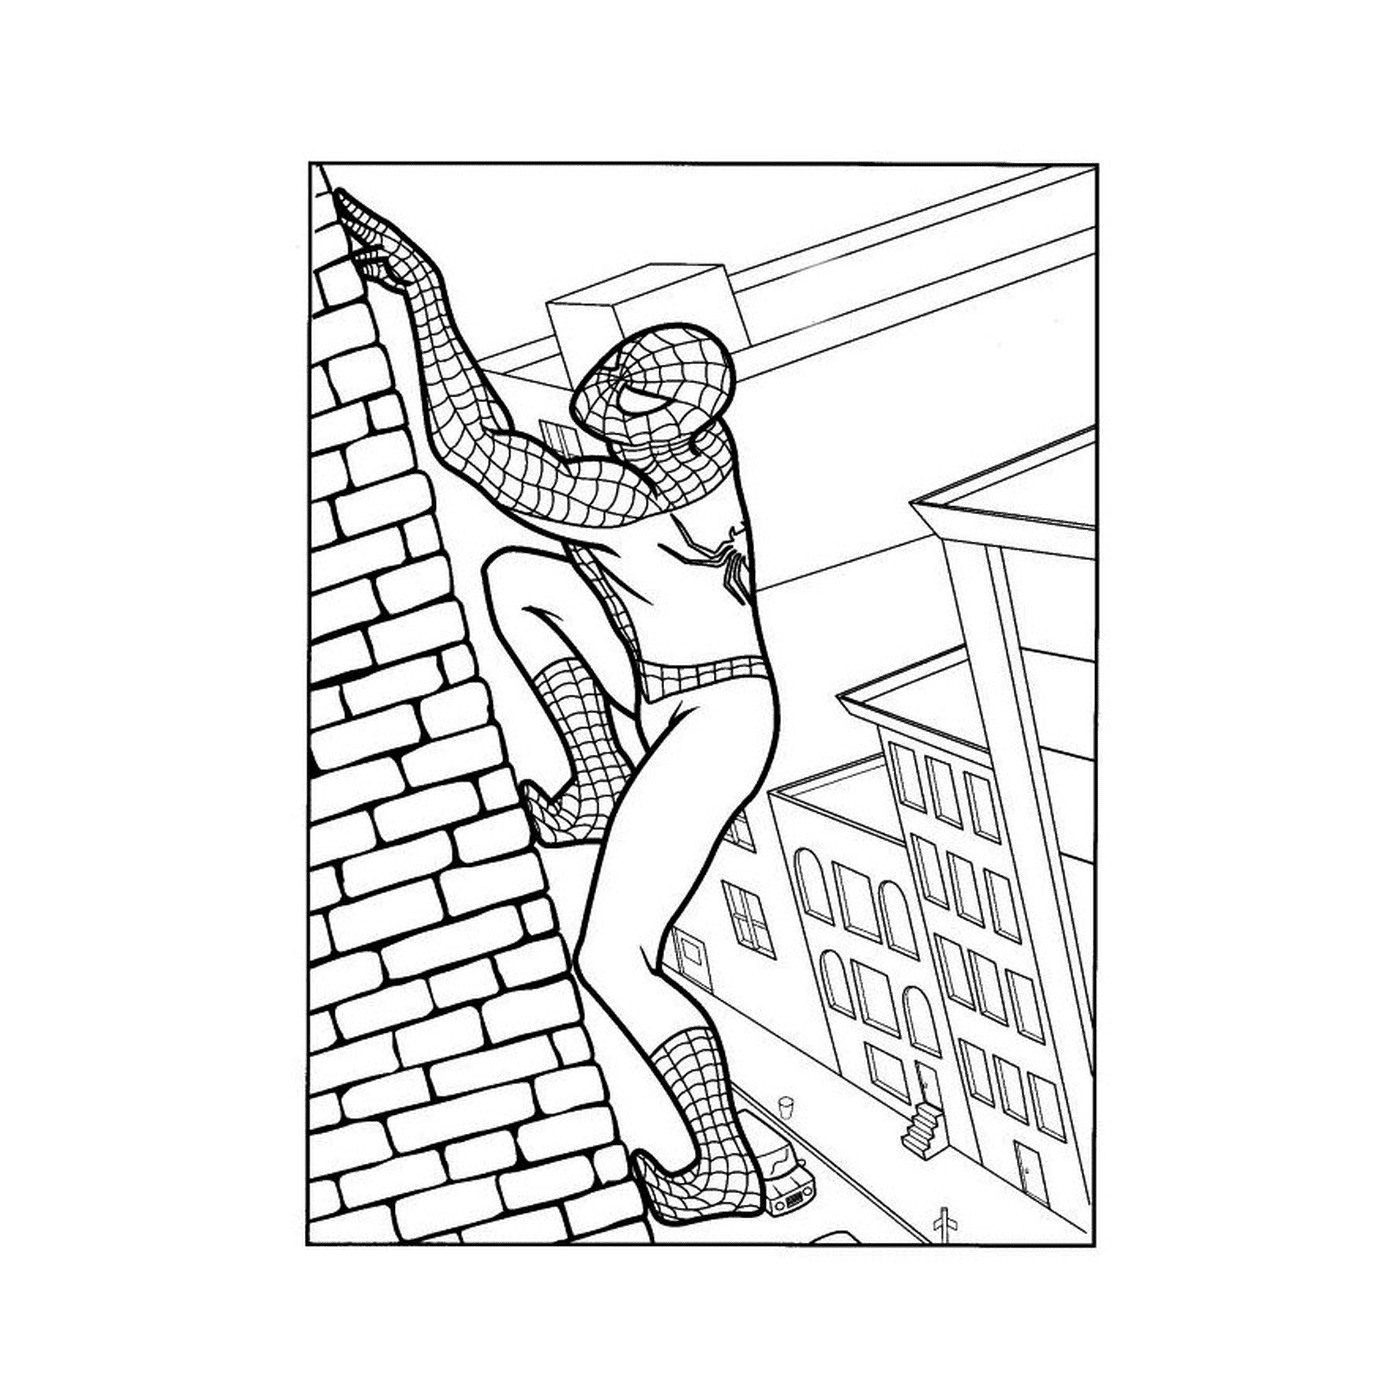  Spiderman si arrampica su un muro 